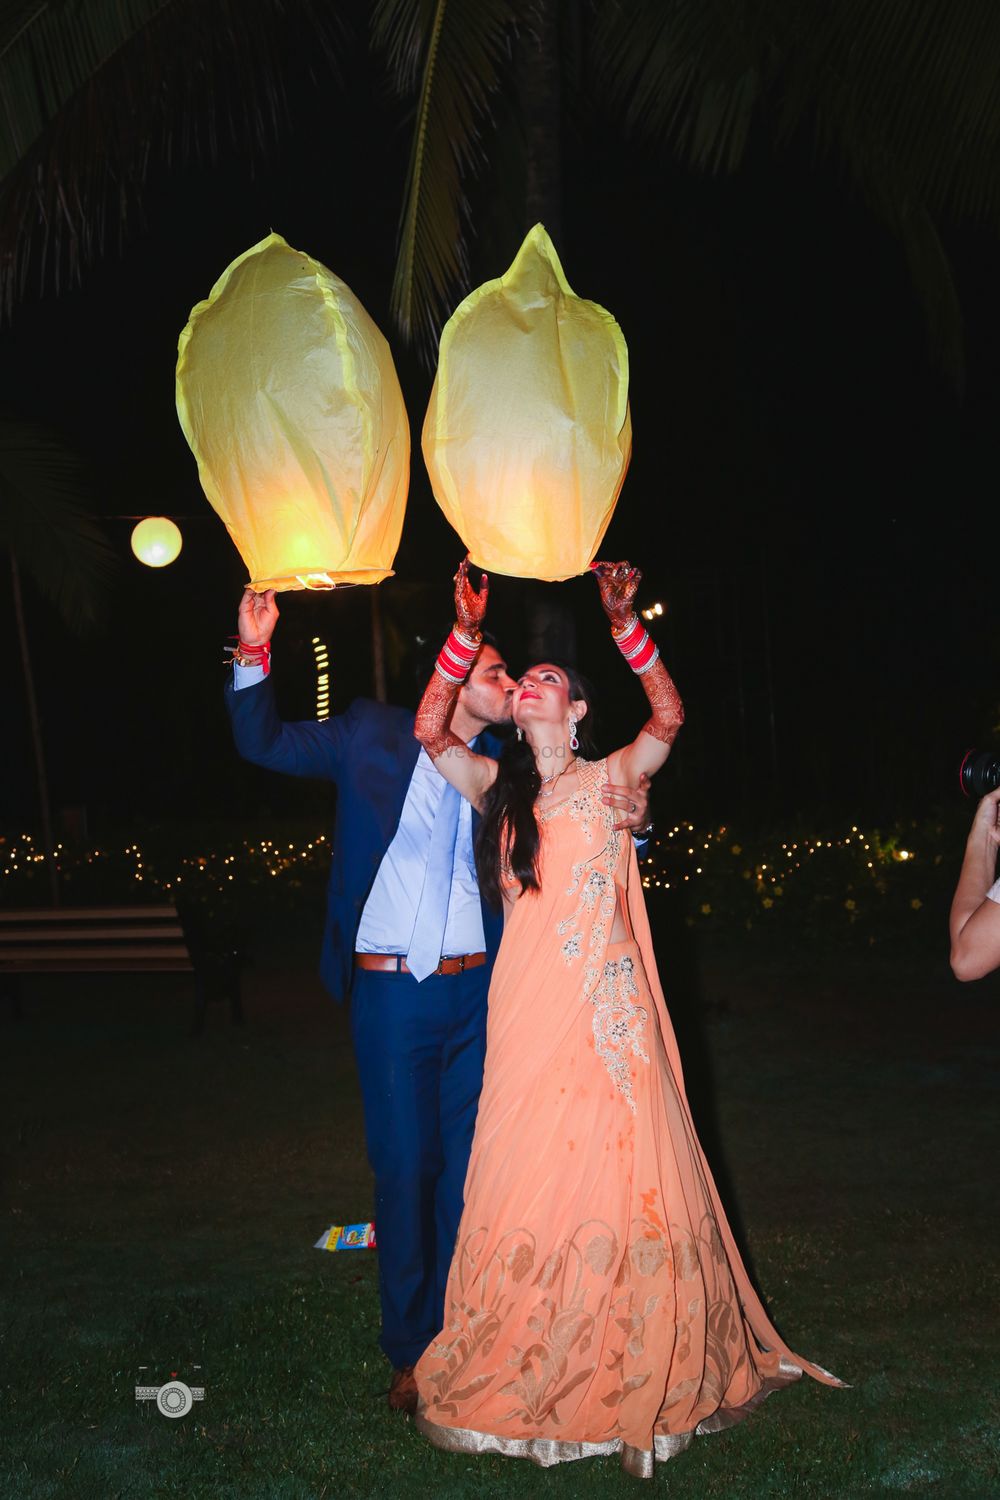 Photo of Couple releasing flying lantern on wedding